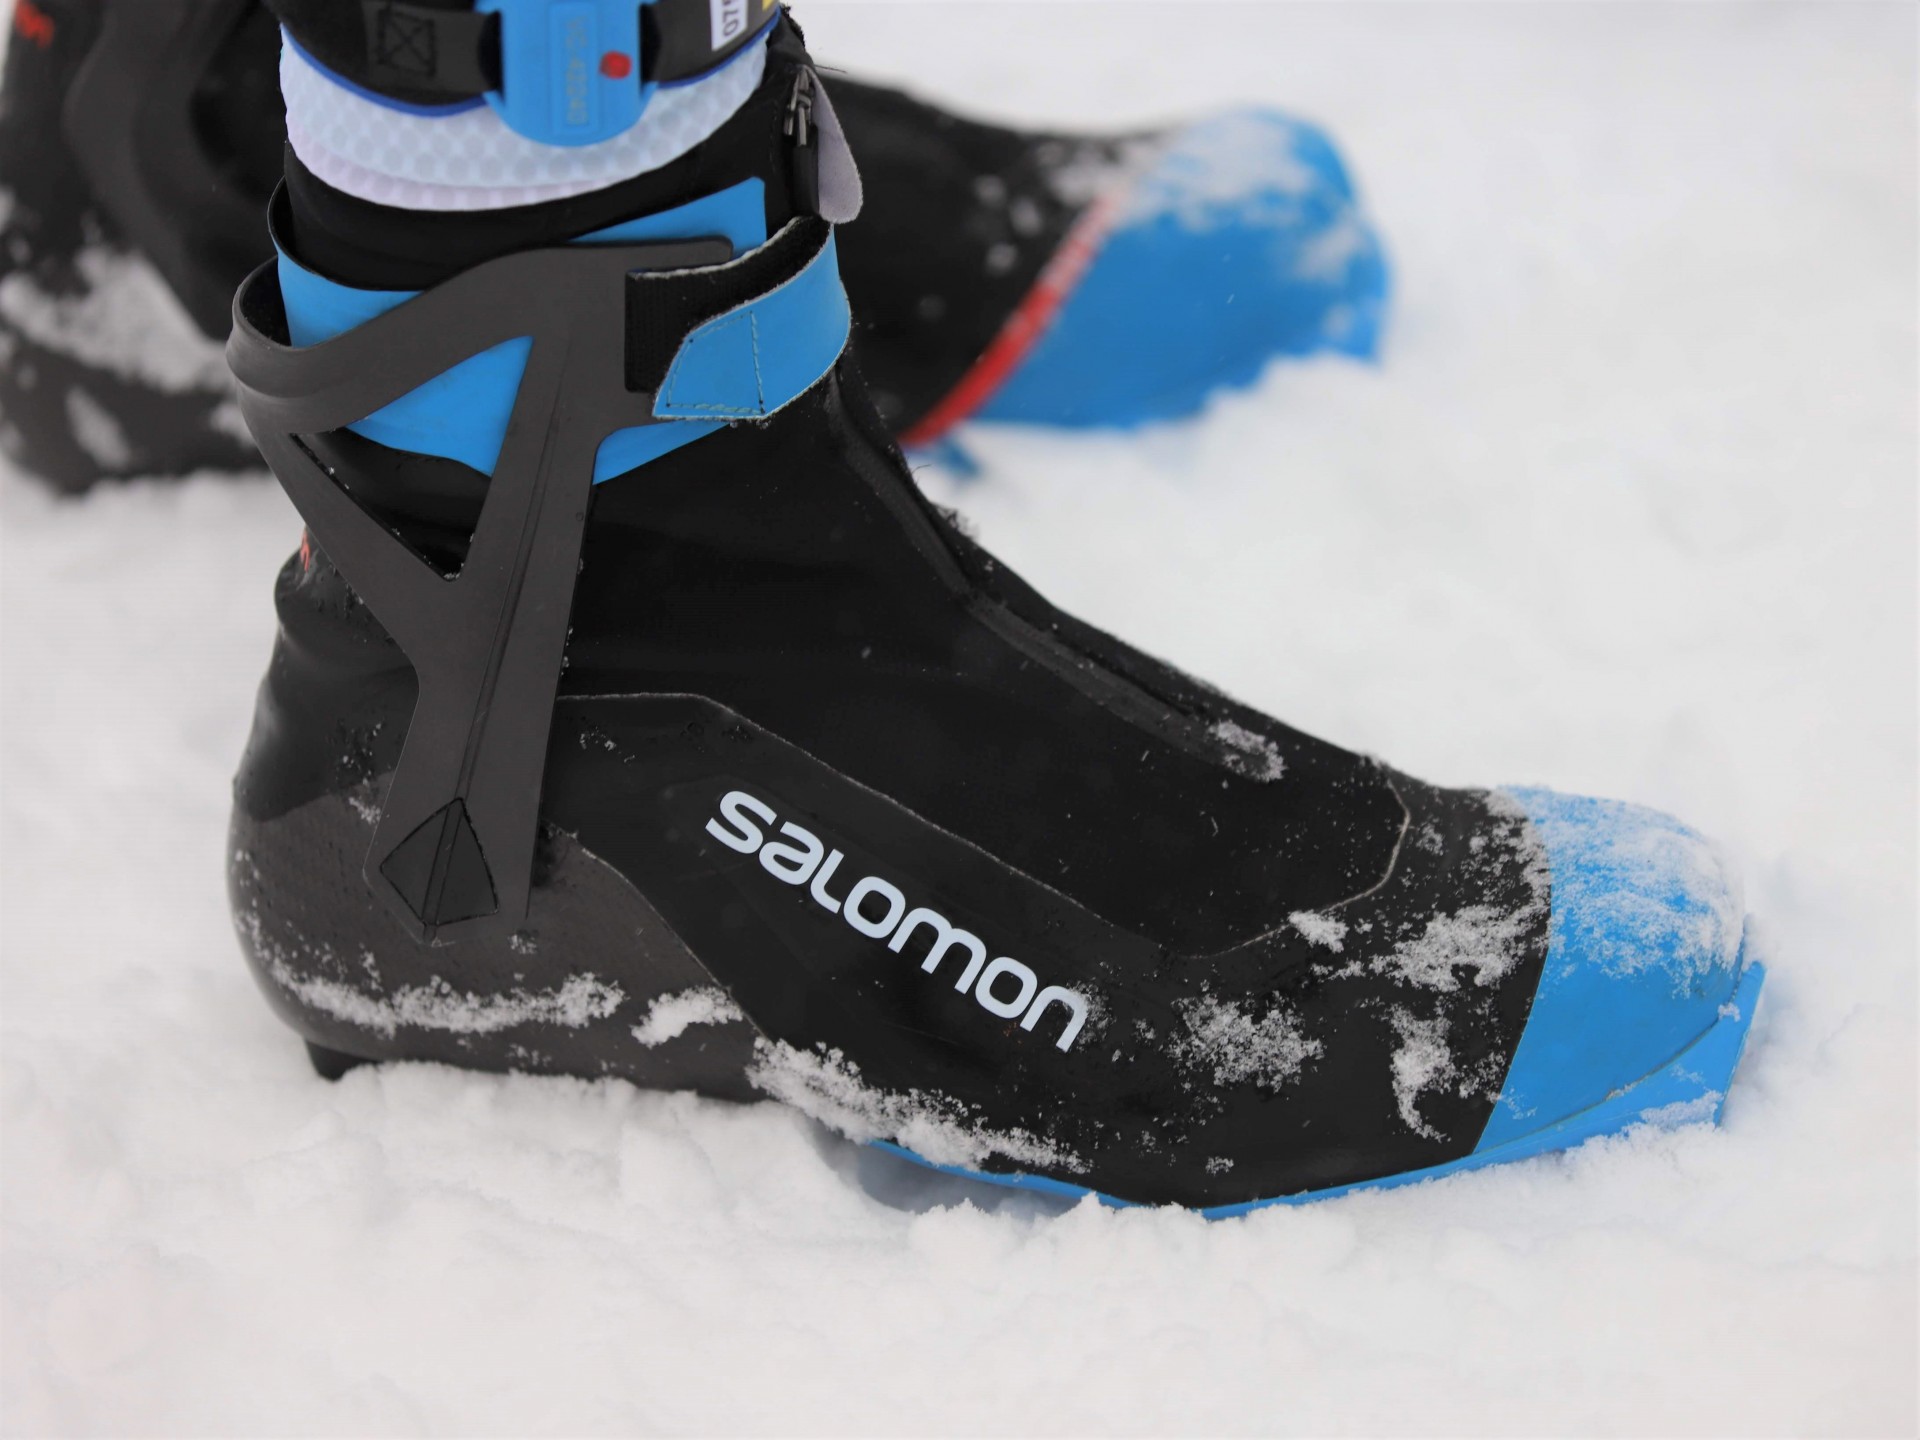 Buy > salomon s lab skate boot > in stock